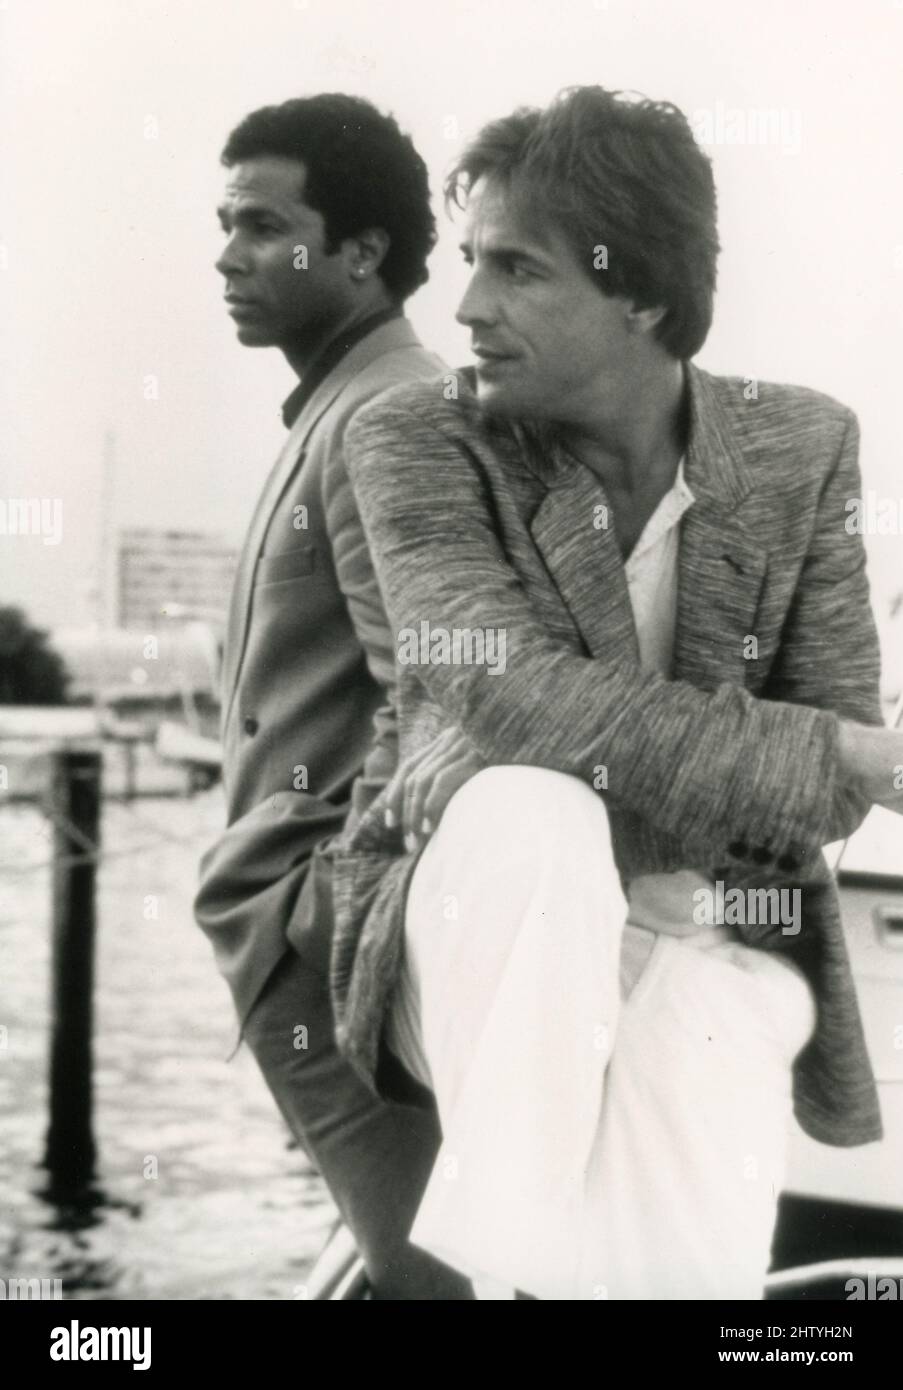 Die amerikanischen Schauspieler Philip Michael Thomas und Don Johnson in der Fernsehserie Miami Vice, USA 1984 Stockfoto